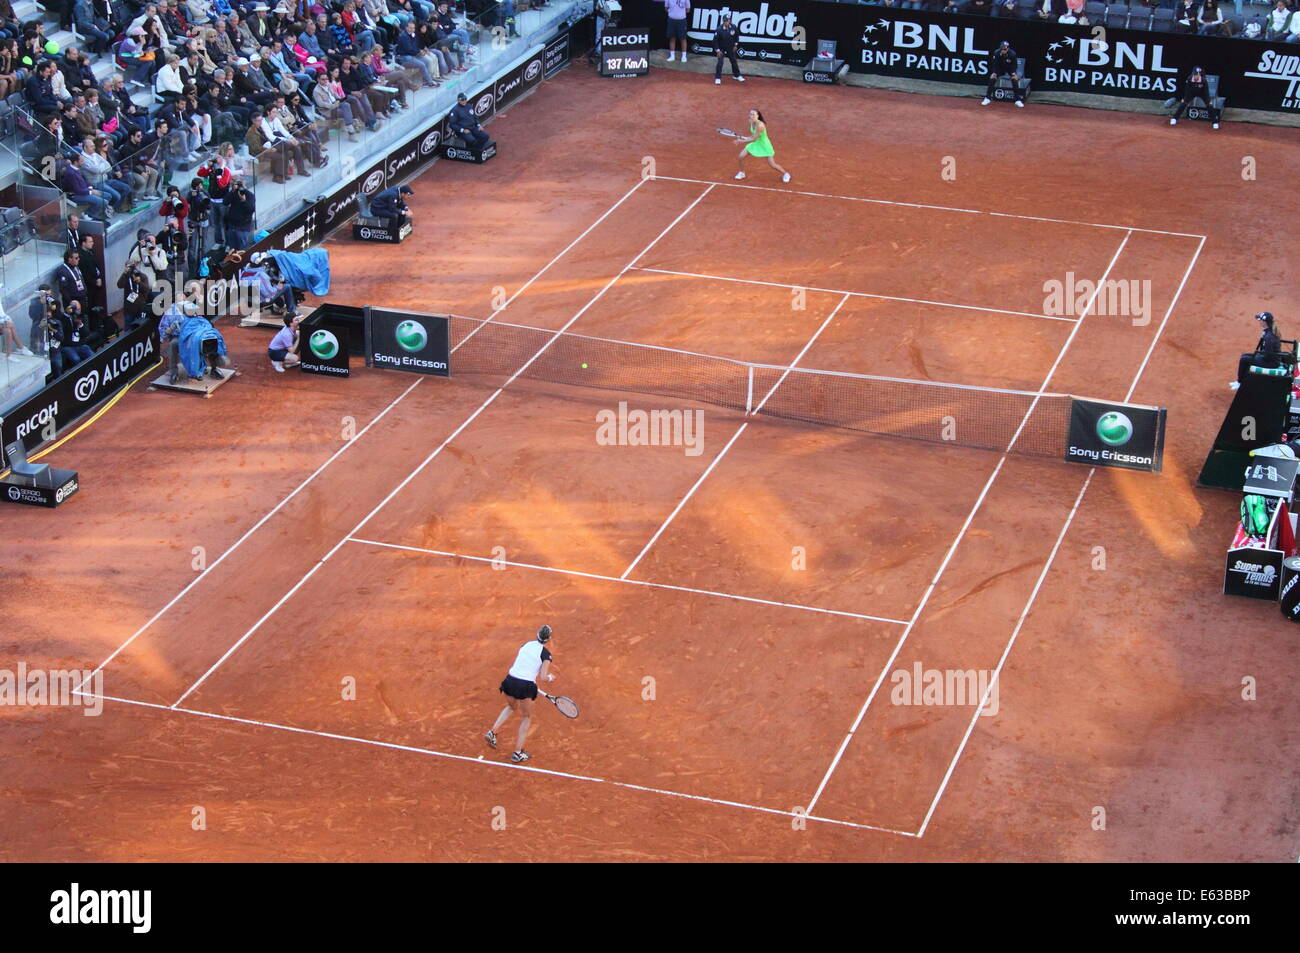 Roma - 8 maggio: Martinez Sanchez vs helena jankovic durante il match finale delle donne categoria a atp 2010 tennis di roma Foto Stock